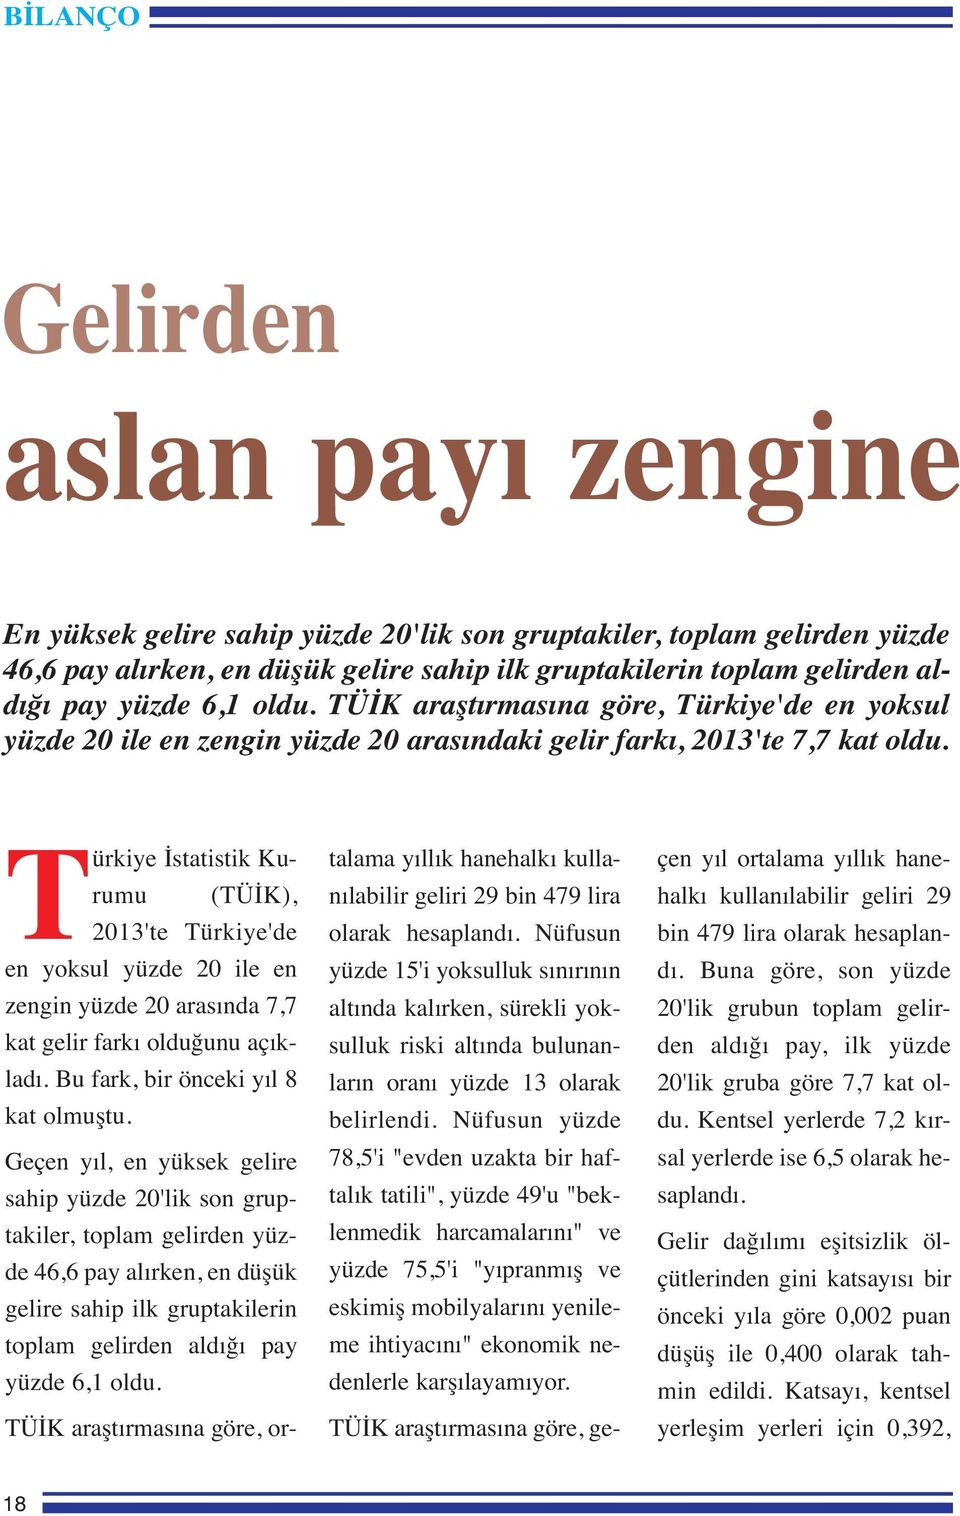 Türkiye İstatistik Kurumu (TÜİK), 2013'te Türkiye'de en yoksul yüzde 20 ile en zengin yüzde 20 arasında 7,7 kat gelir farkı olduğunu açıkladı. Bu fark, bir önceki yıl 8 kat olmuştu.